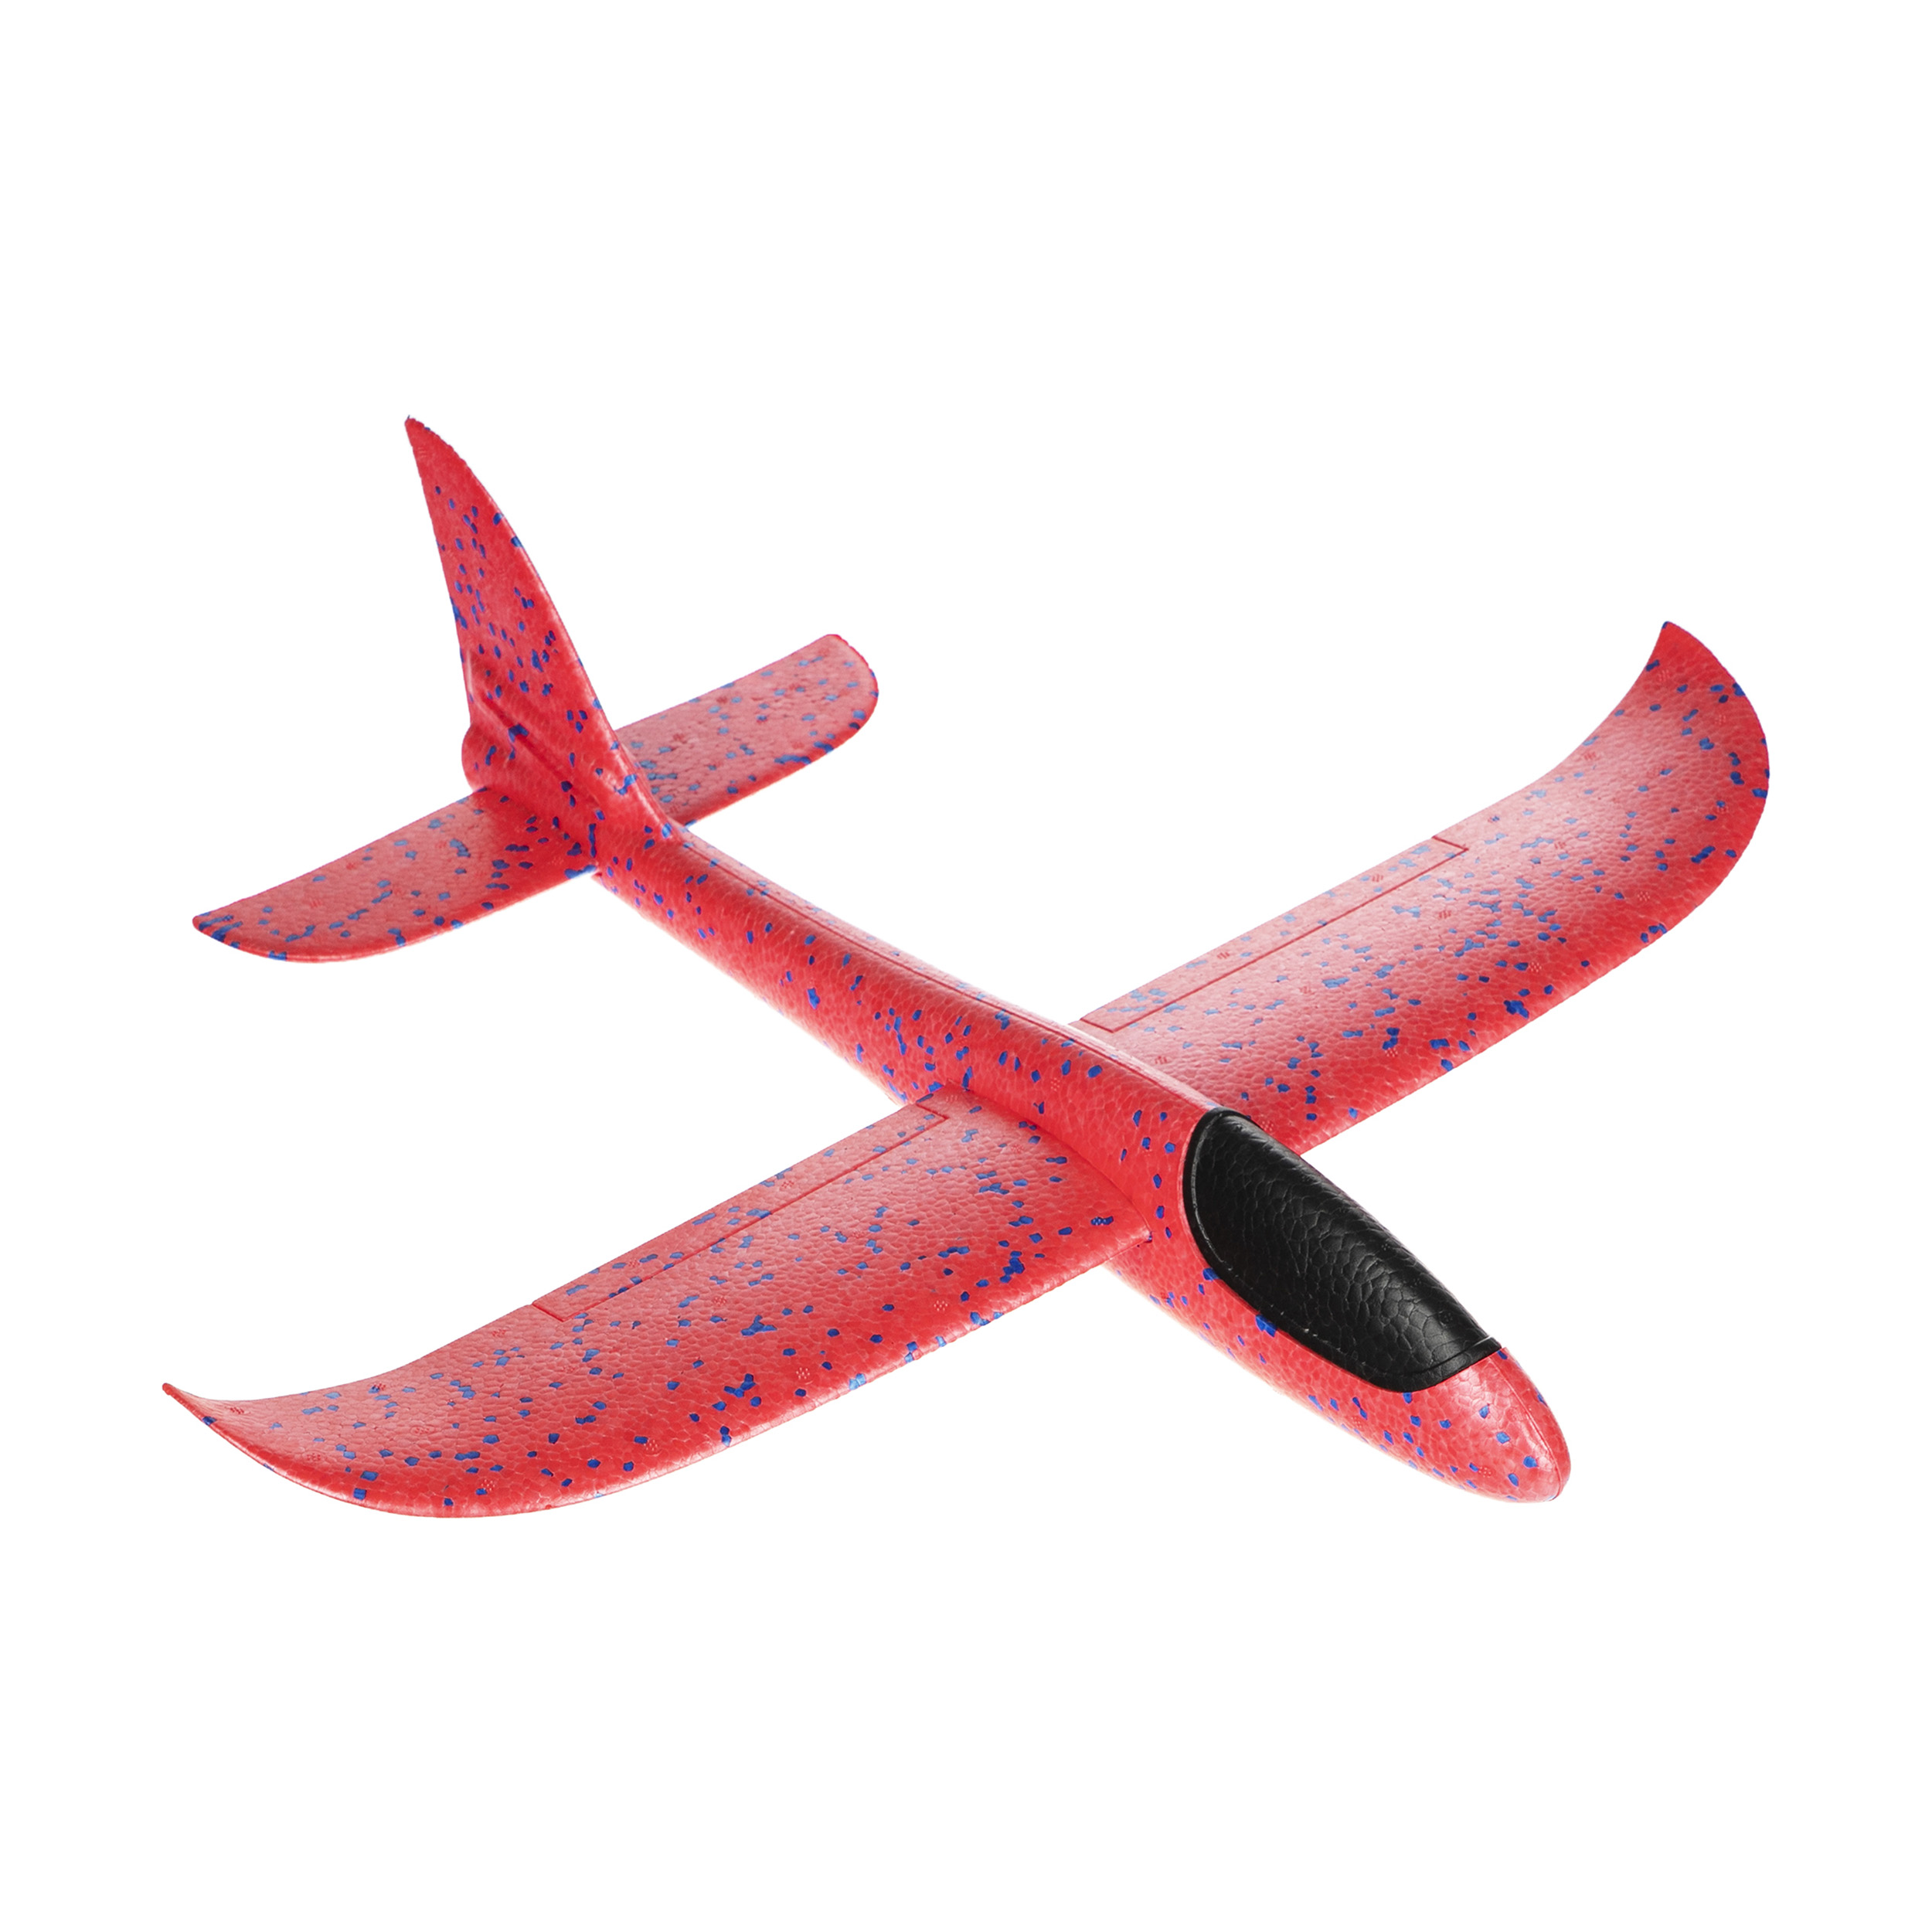 هواپیما اسباب بازی مدل Glider